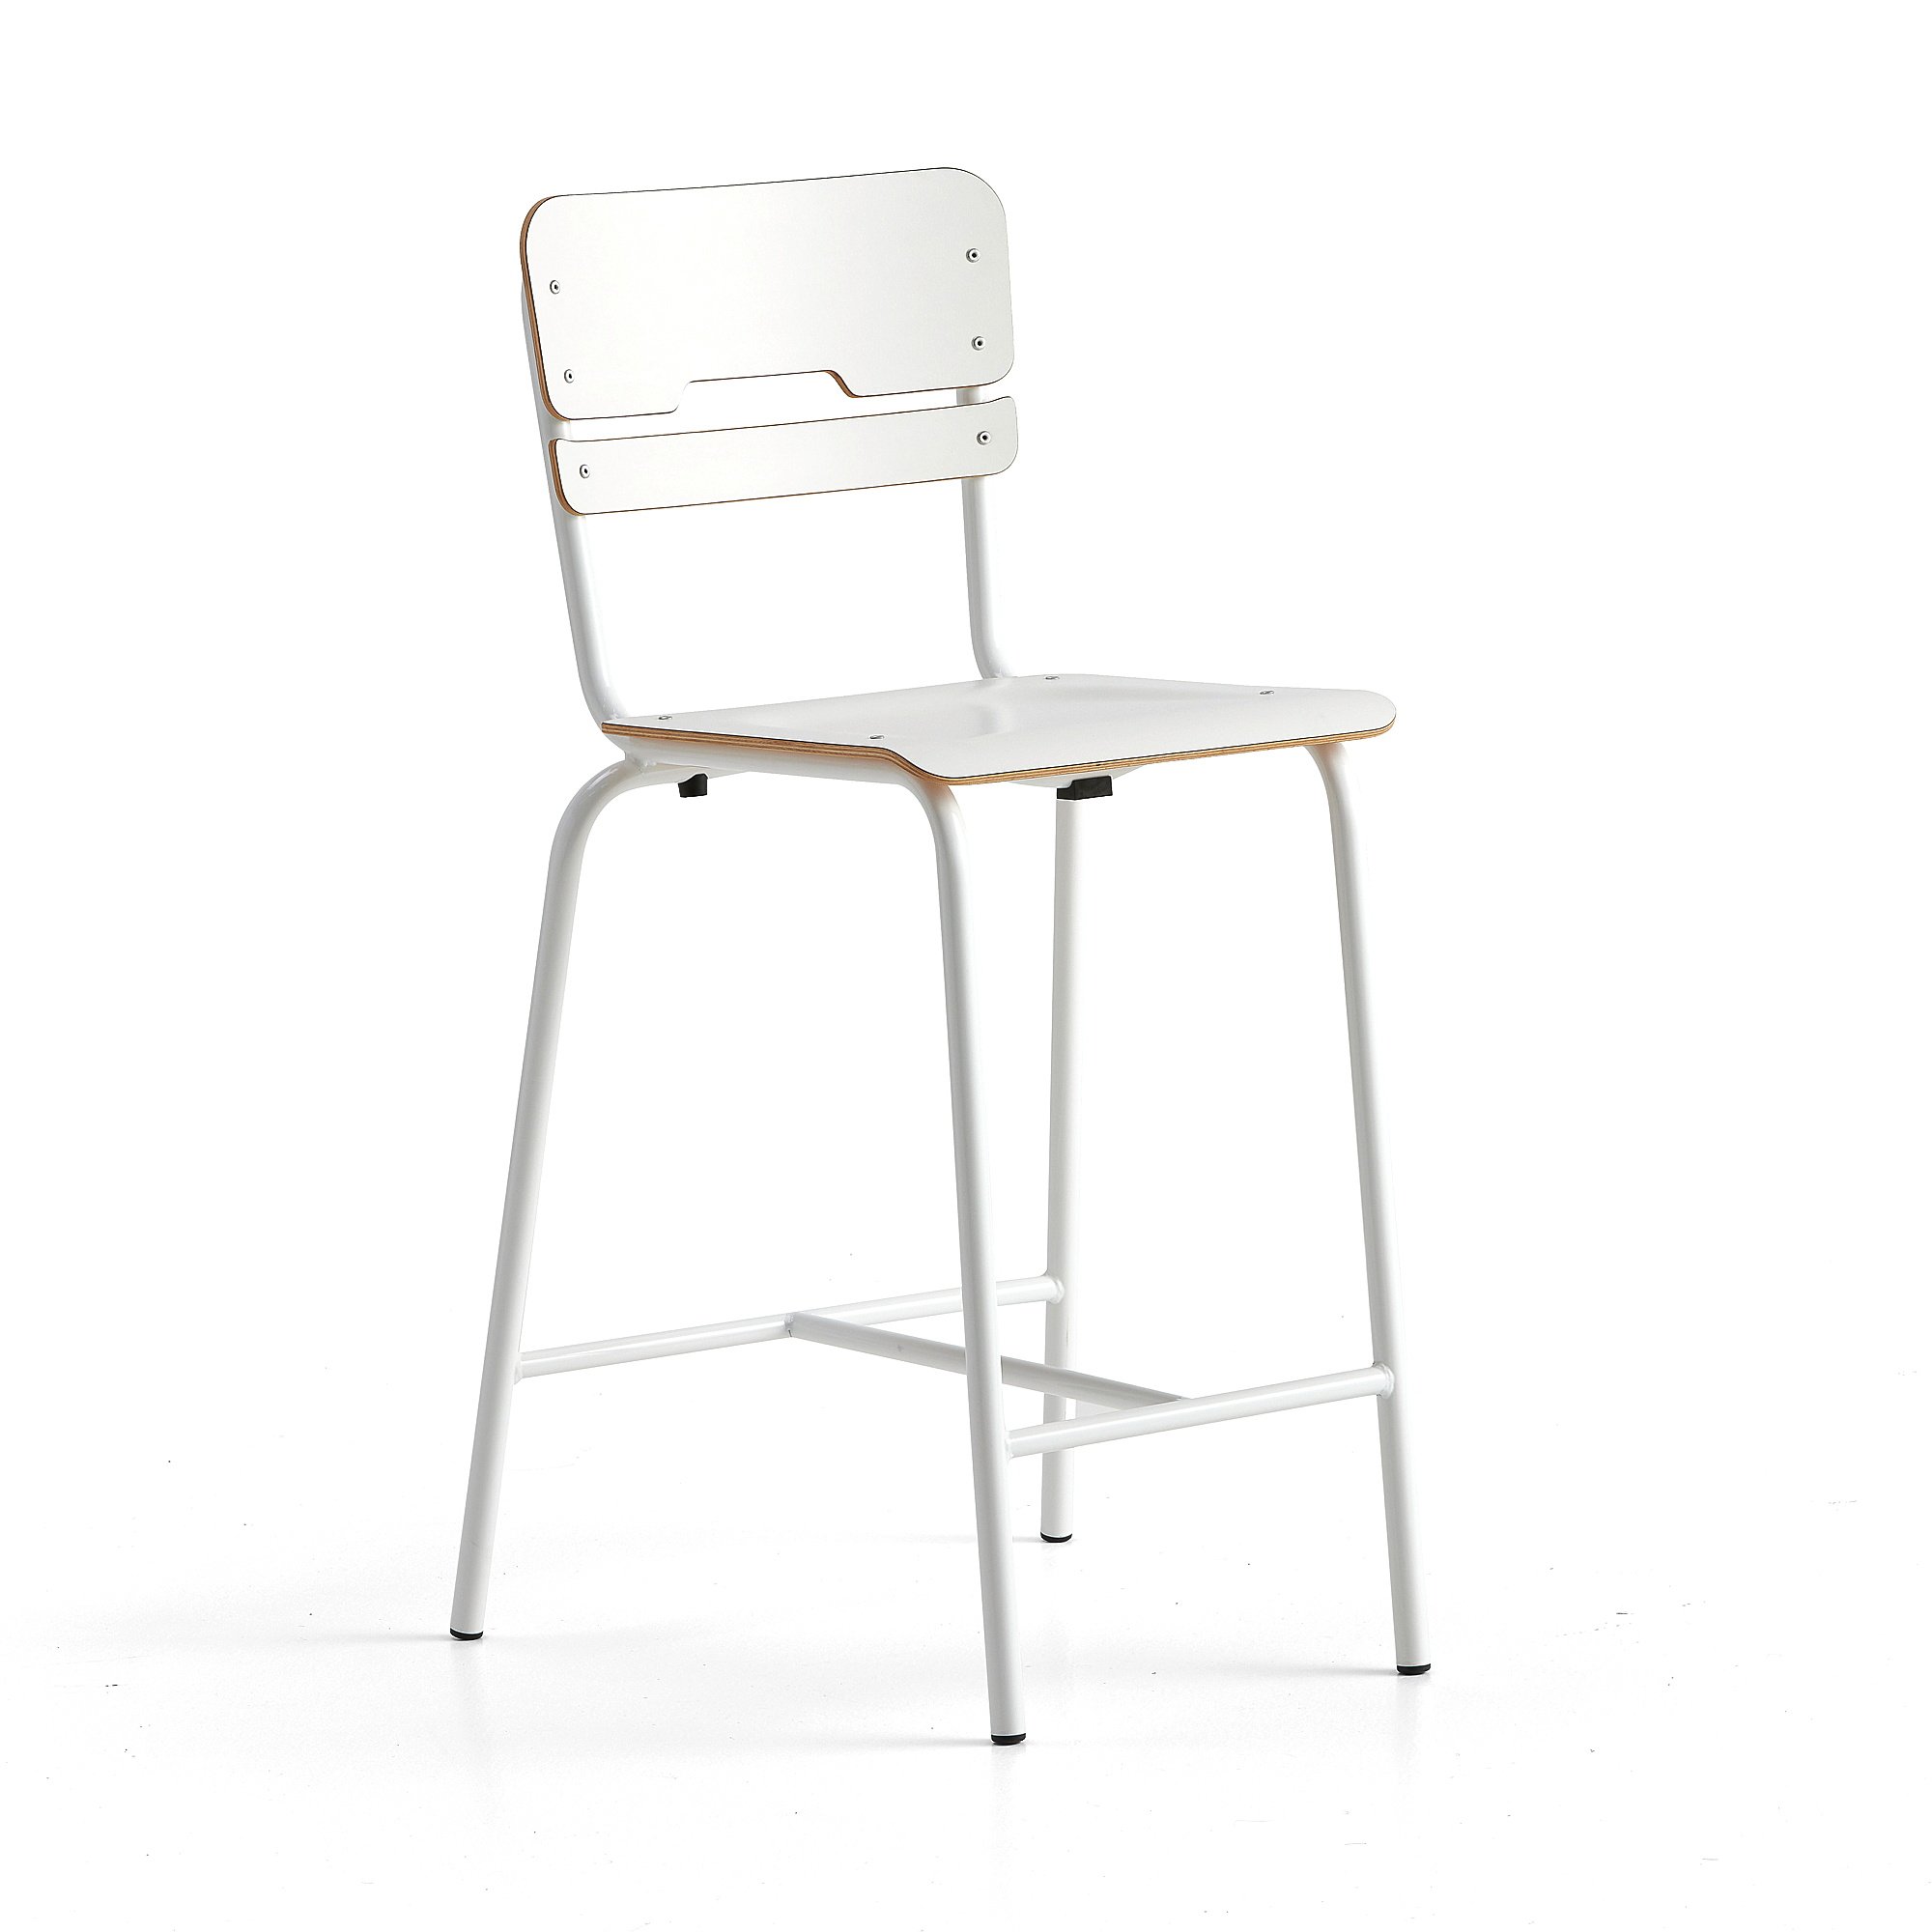 Školní židle SCIENTIA, sedák 390x390 mm, výška 650 mm, bílá/bílá